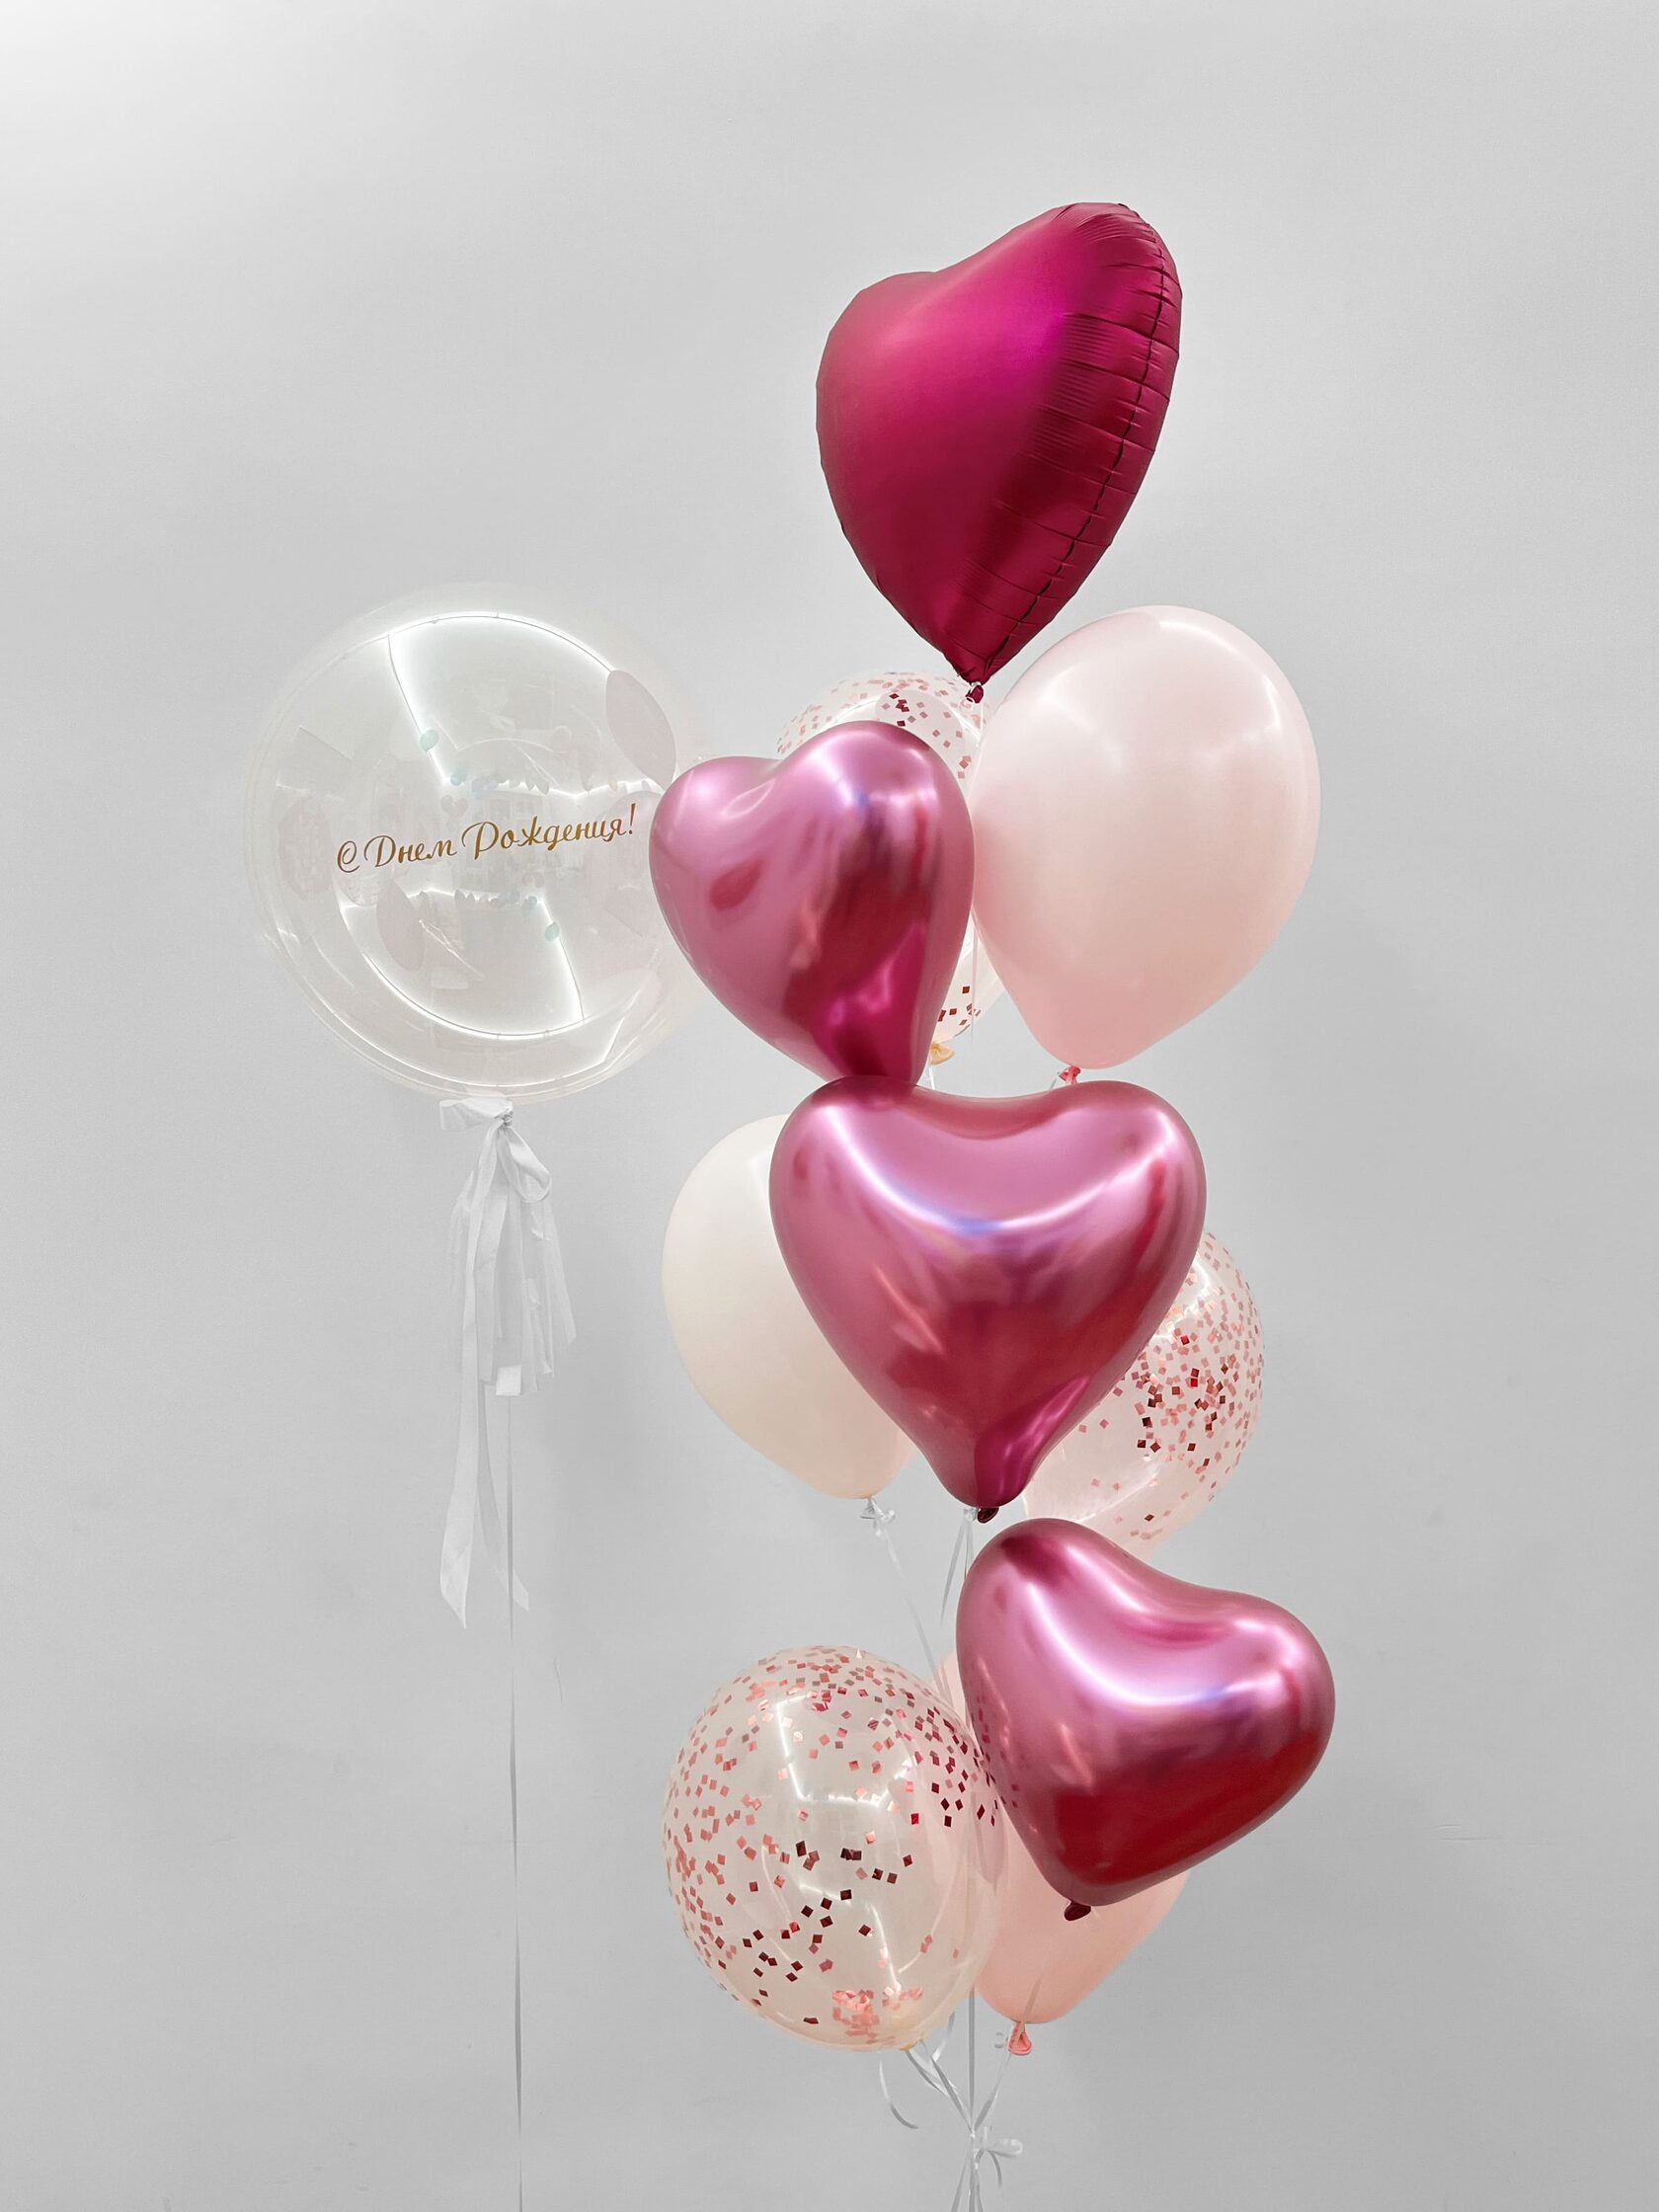 фонтан из воздушных шаров с гелием футбол 5 шт Фонтан из шаров «Малиновое сияние» - 10 шаров + шар Bubbles (сфера) - розовое конфетти